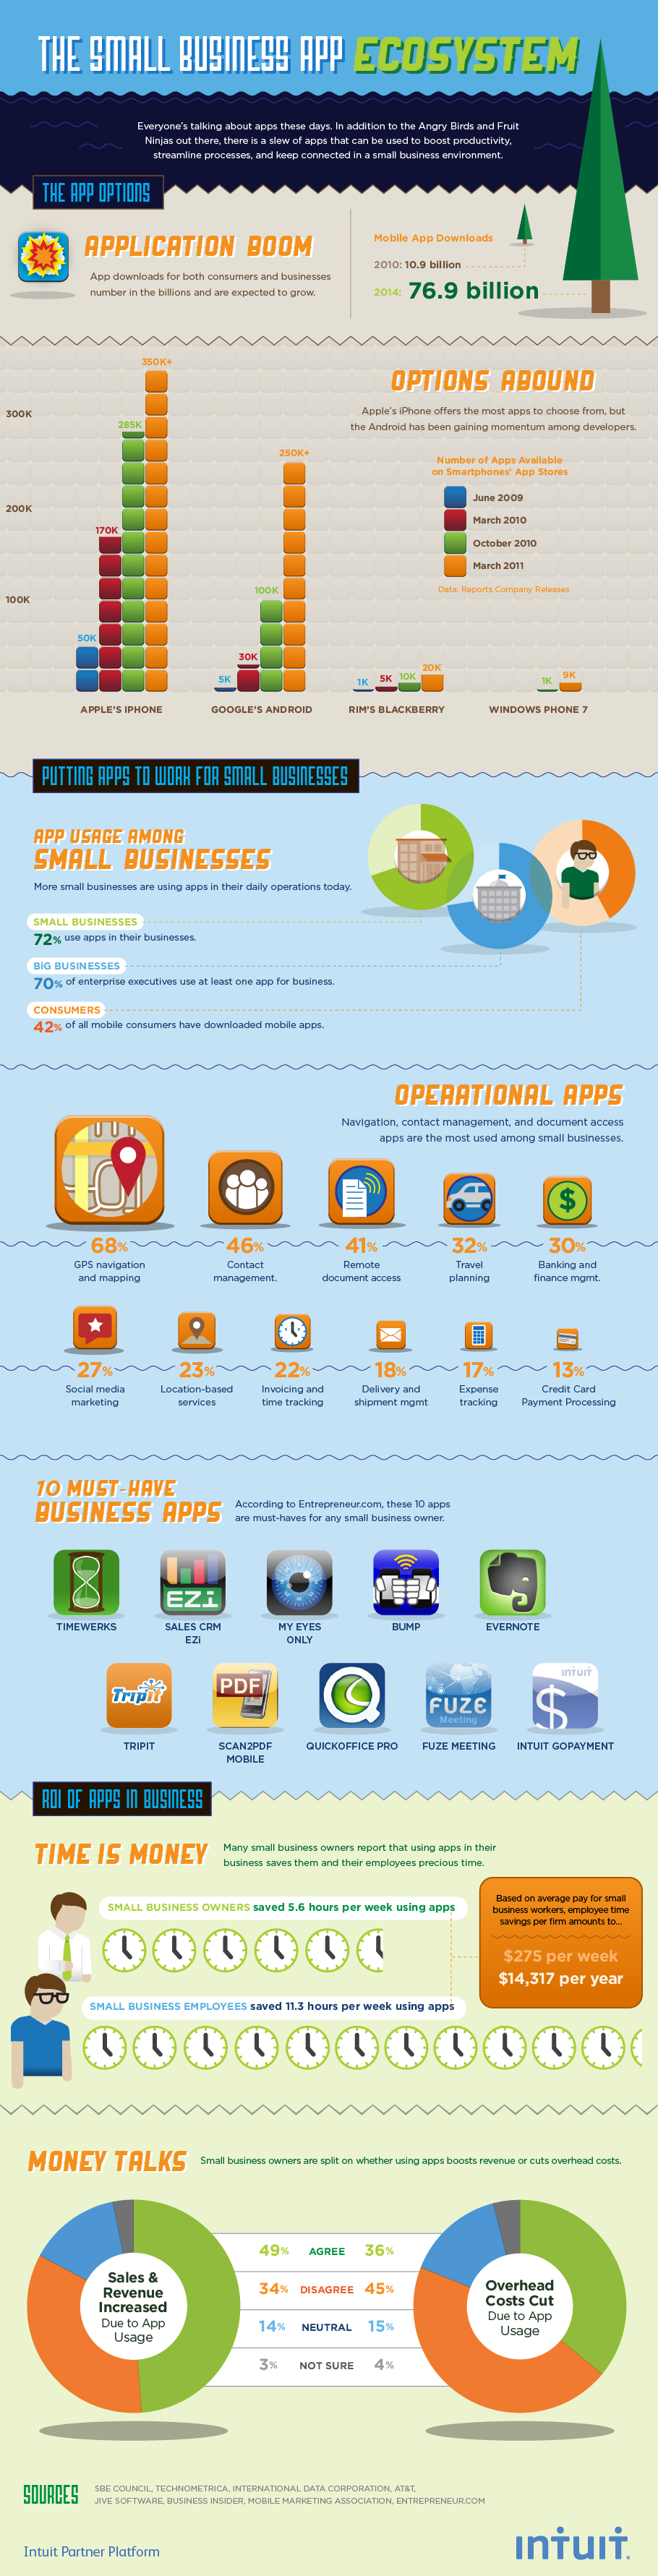 Las aplicaciones móviles en el mundo de las pymes (infografía)